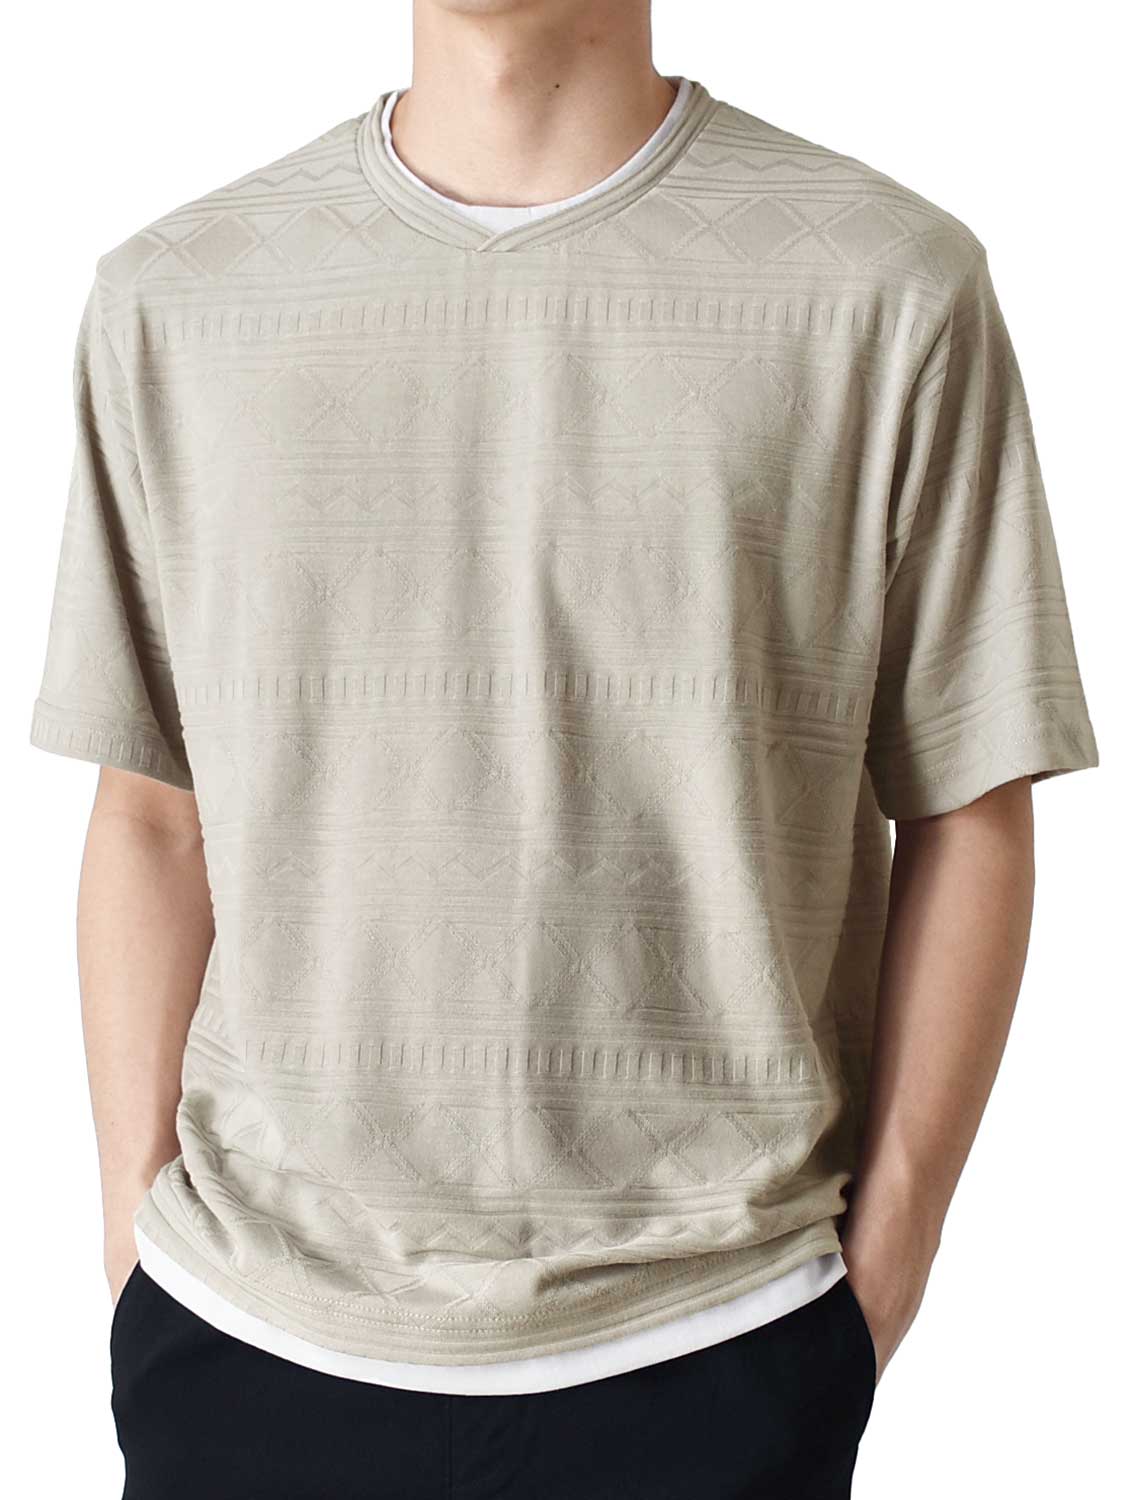 カットソー Tシャツ メンズ 総柄 ストレッチ 重ね着風 送料無料 通販Y 半袖